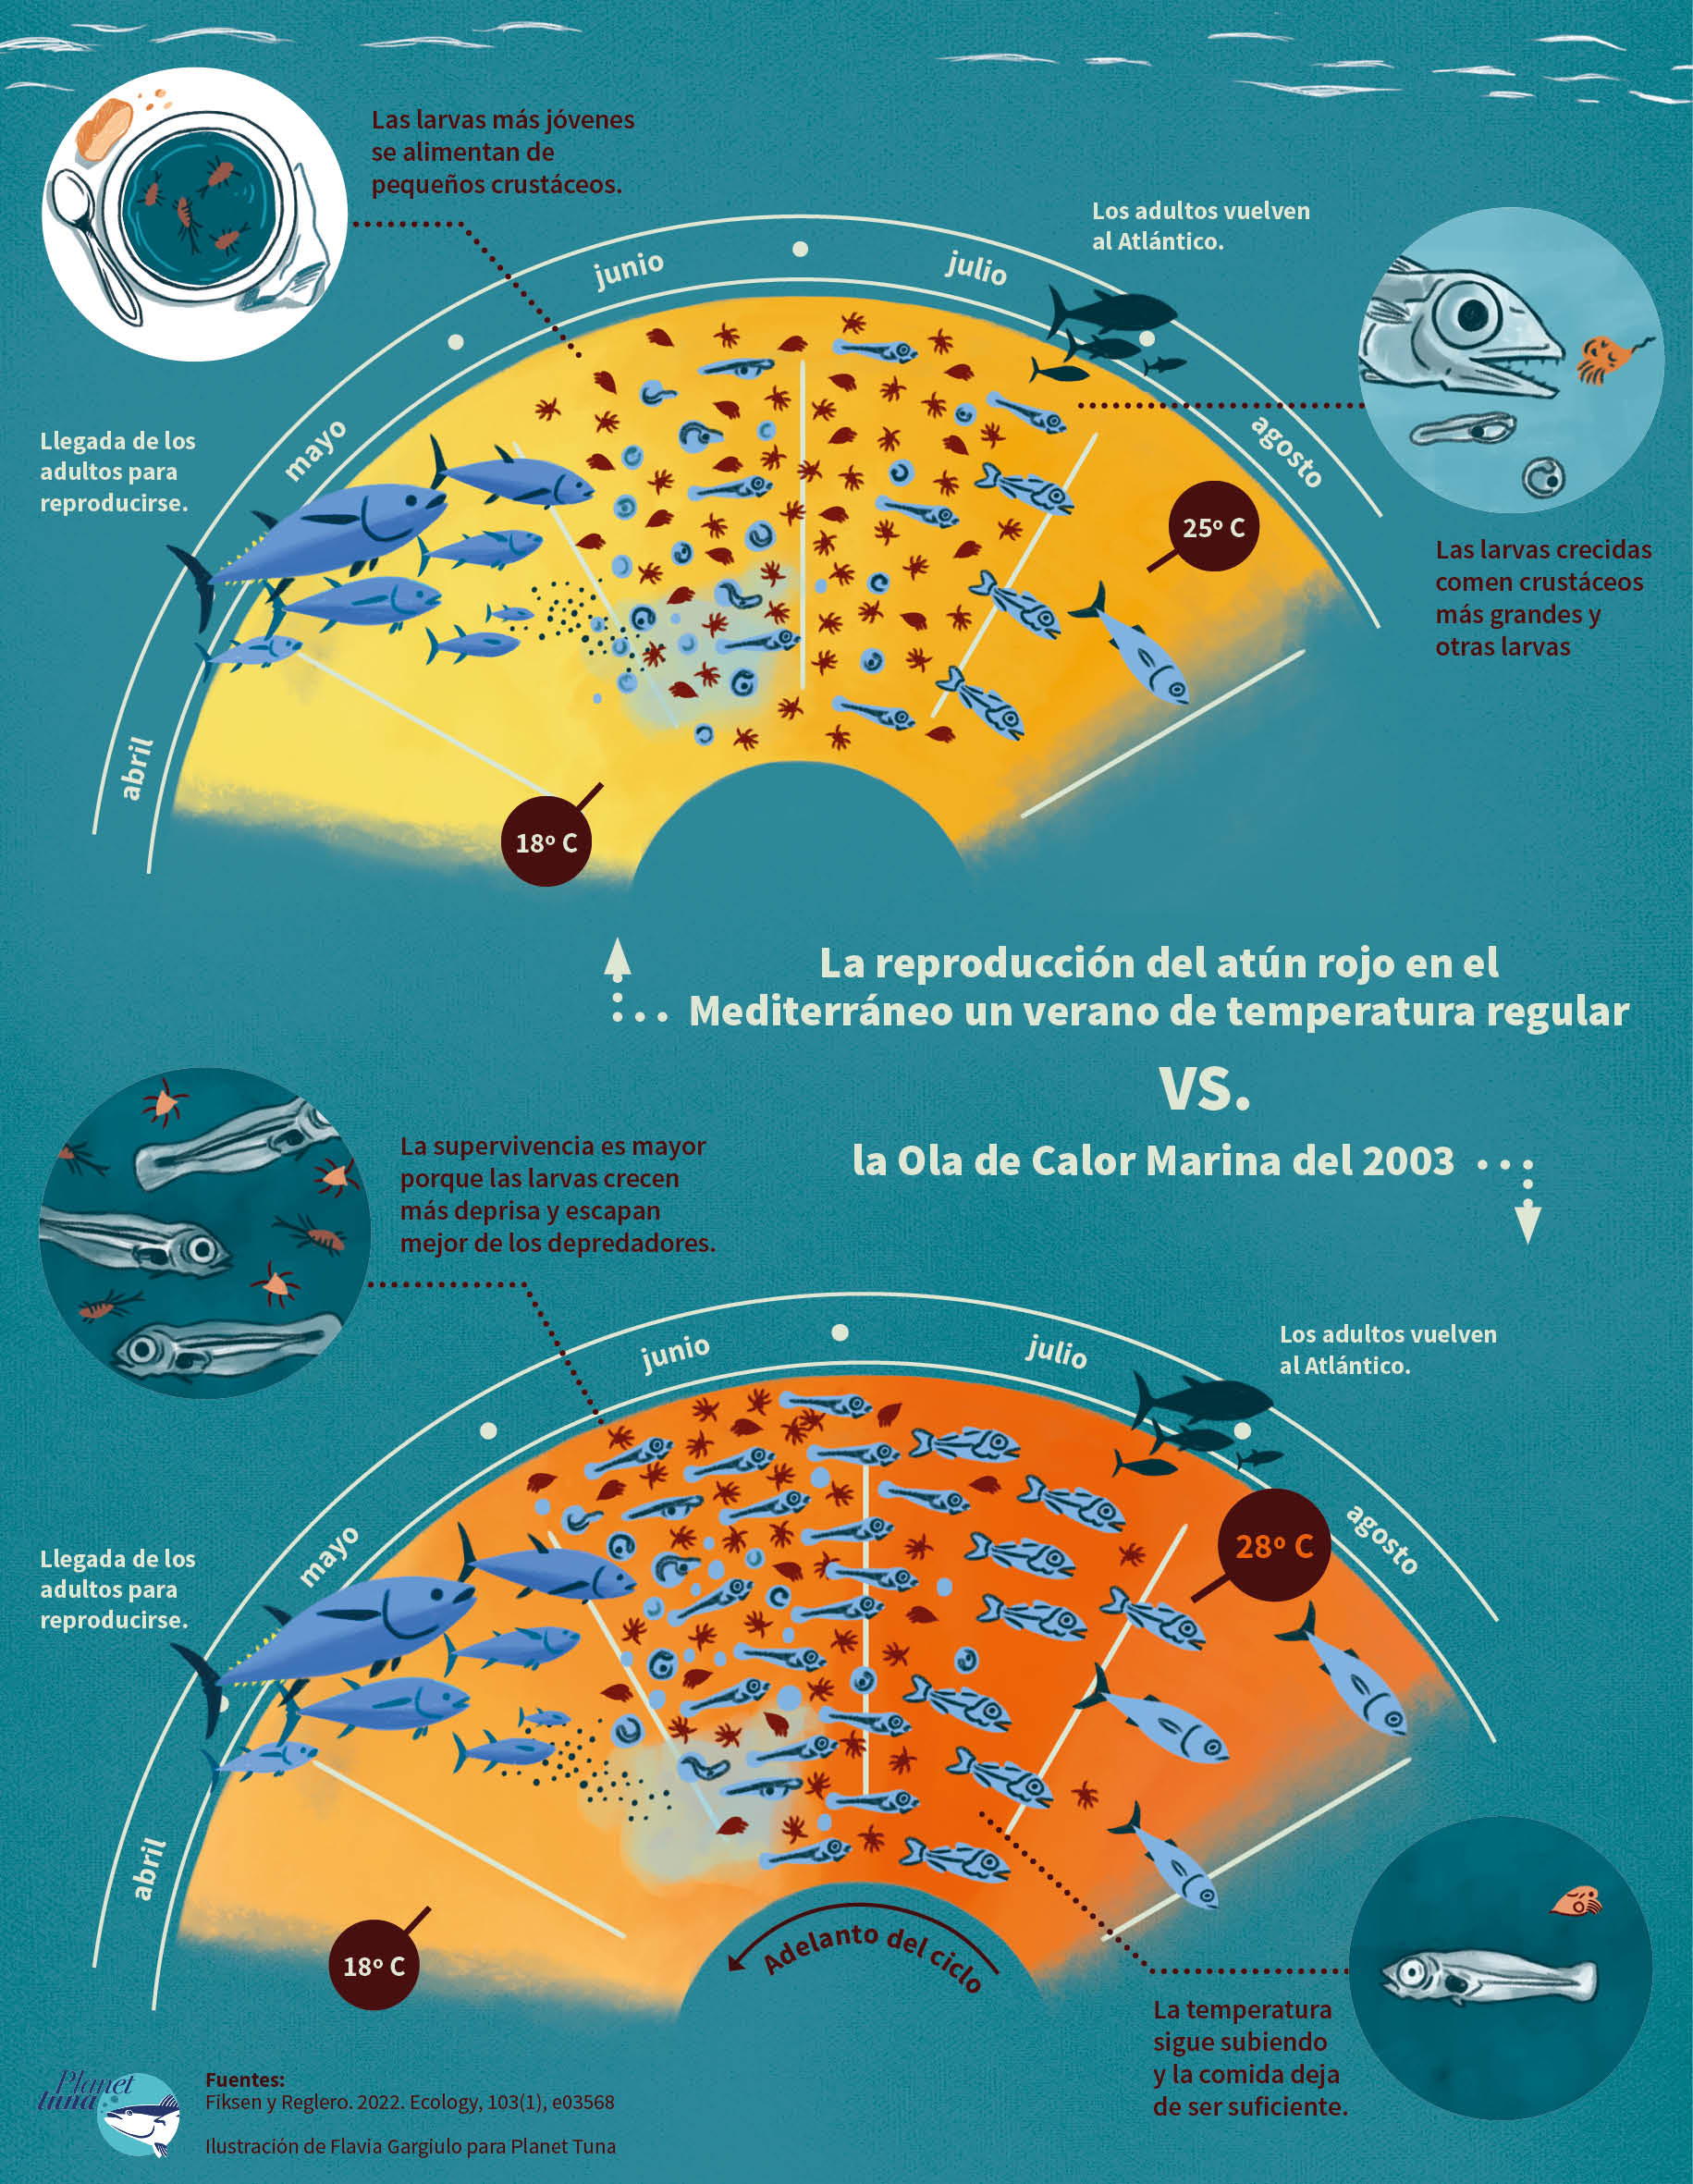 La ilustración compara el ciclo de reproducción del atún rojo en un verano de tempeartura regular con el ciclo de reproducción en el año 2003. La imagen muestra cómo la ola de calor marina de 2003 influye en el adelanto del proceso de reproducción del atún rojo.